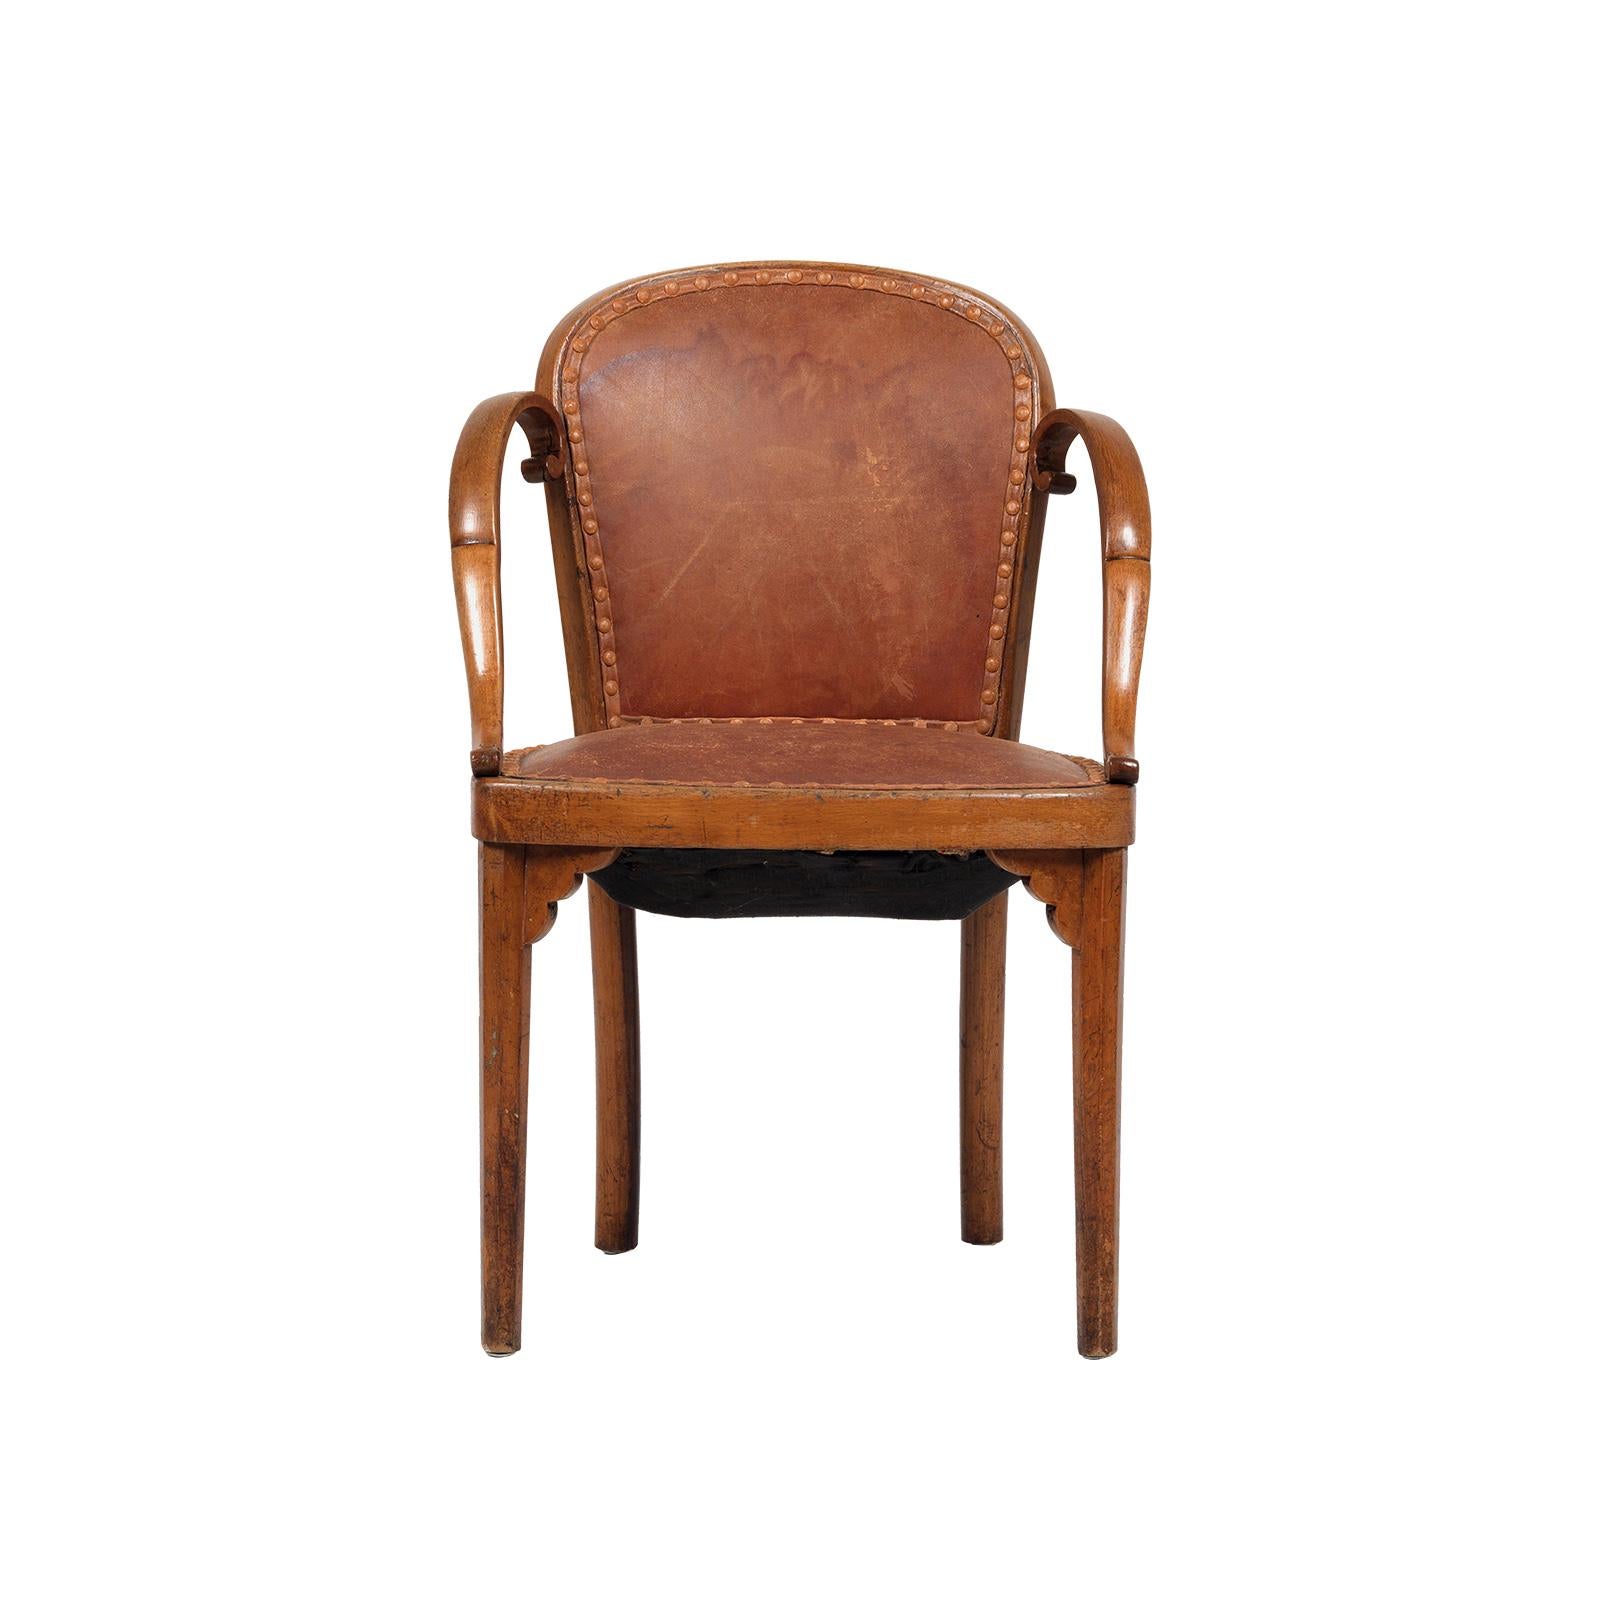 Ein sehr seltener und bisher nicht dokumentierter Sessel von Josef Hoffmann, original Lederbezug, Brandeisen J&J Kohn. Ein identischer Stuhl ist auch mit einer anderen Polsterung erhältlich.

